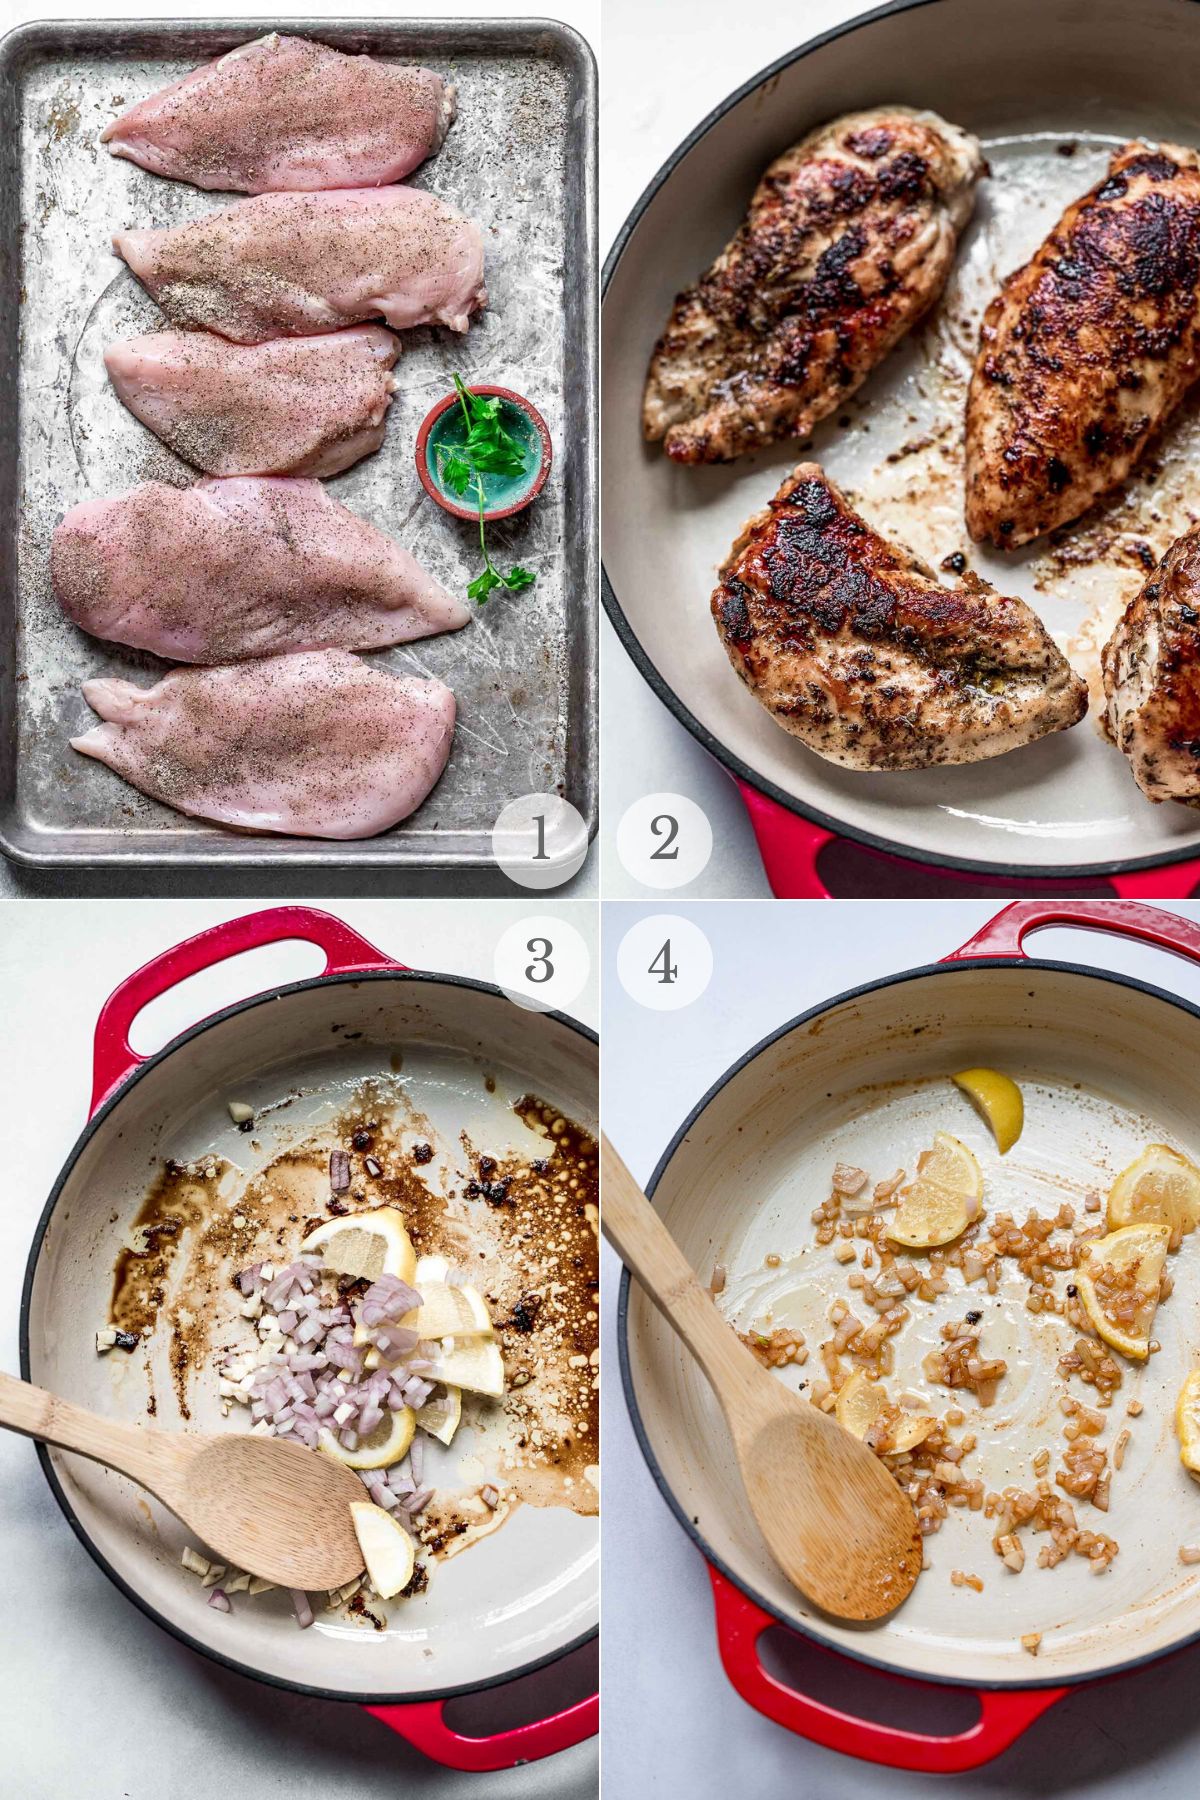 chicken in white wine sauce recipe steps 1-4.